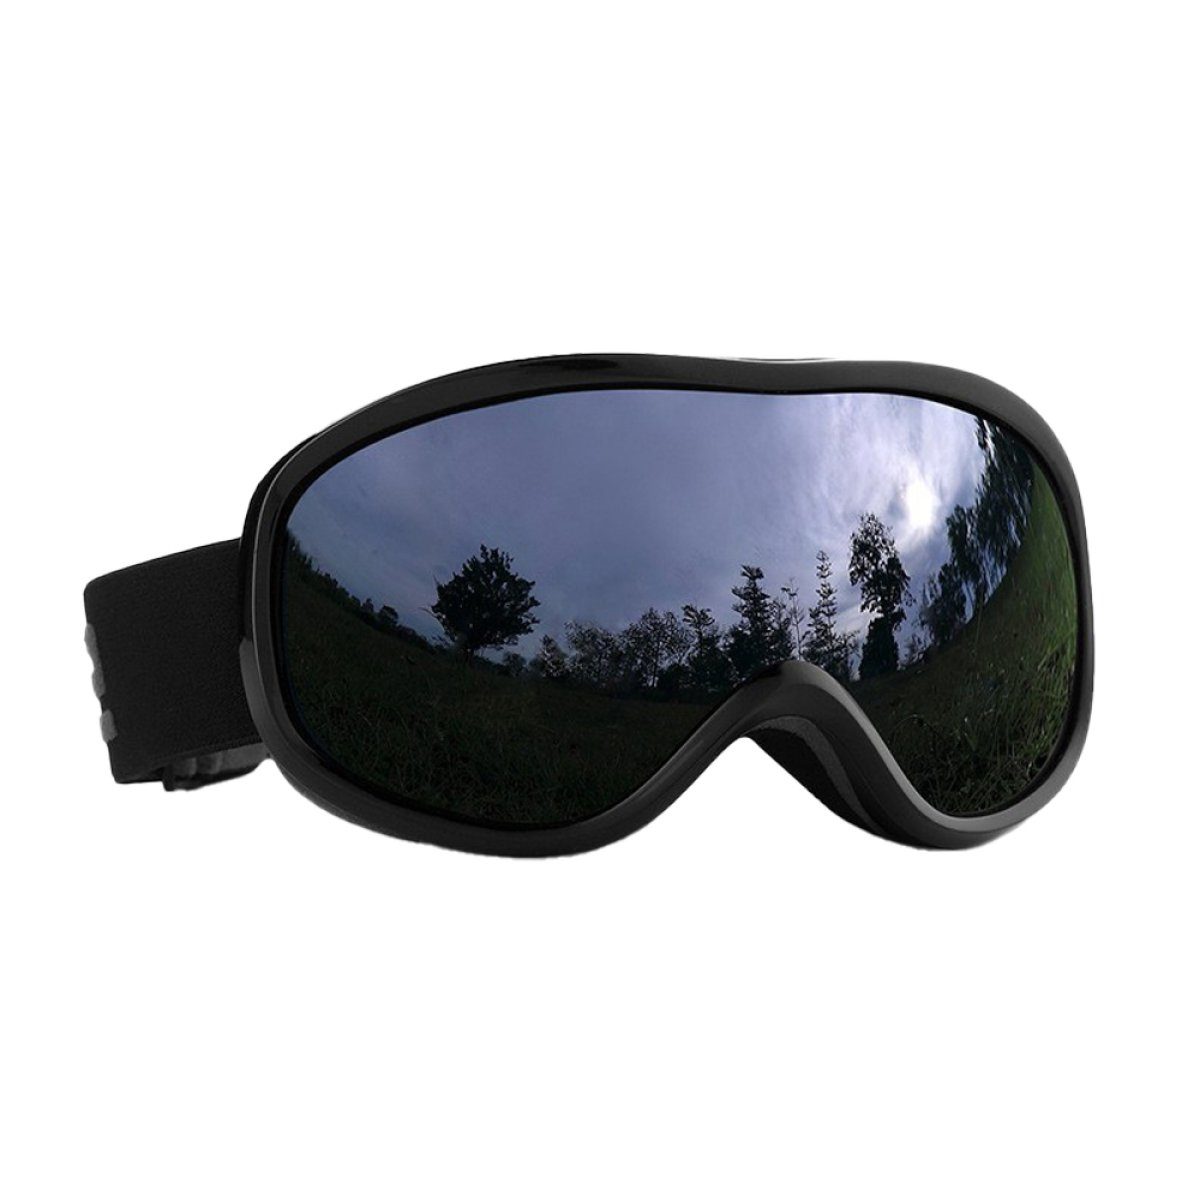 AugenschutzUV-Schutz für Skibrille und das brillenträger, Damen Skibrille für Reduziert Herren,UV-Schutz Skibrille ZmdecQna Beschlagen, grau